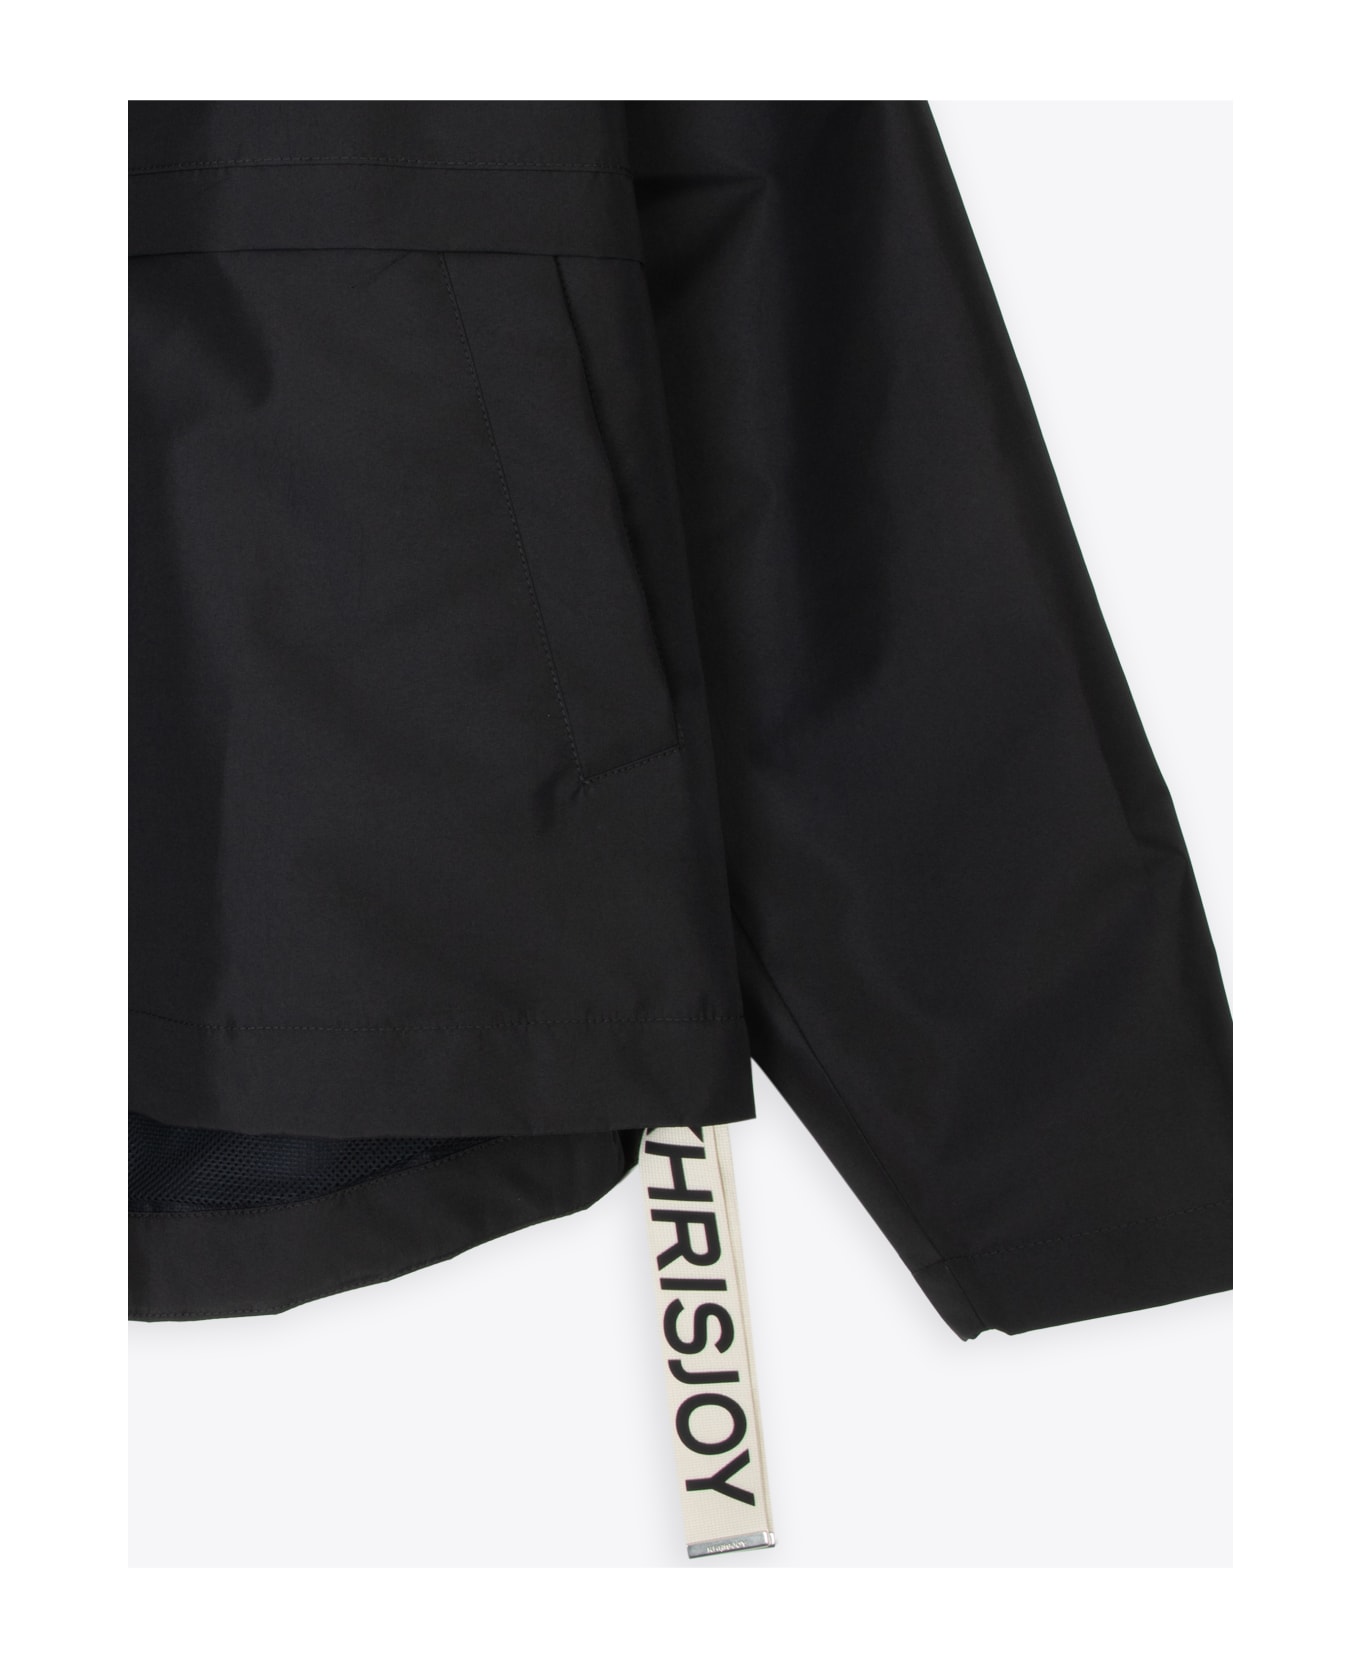 Khrisjoy Shell Windbreaker Black nylon windproof hooded jacket - Shell Windbreaker - Nero